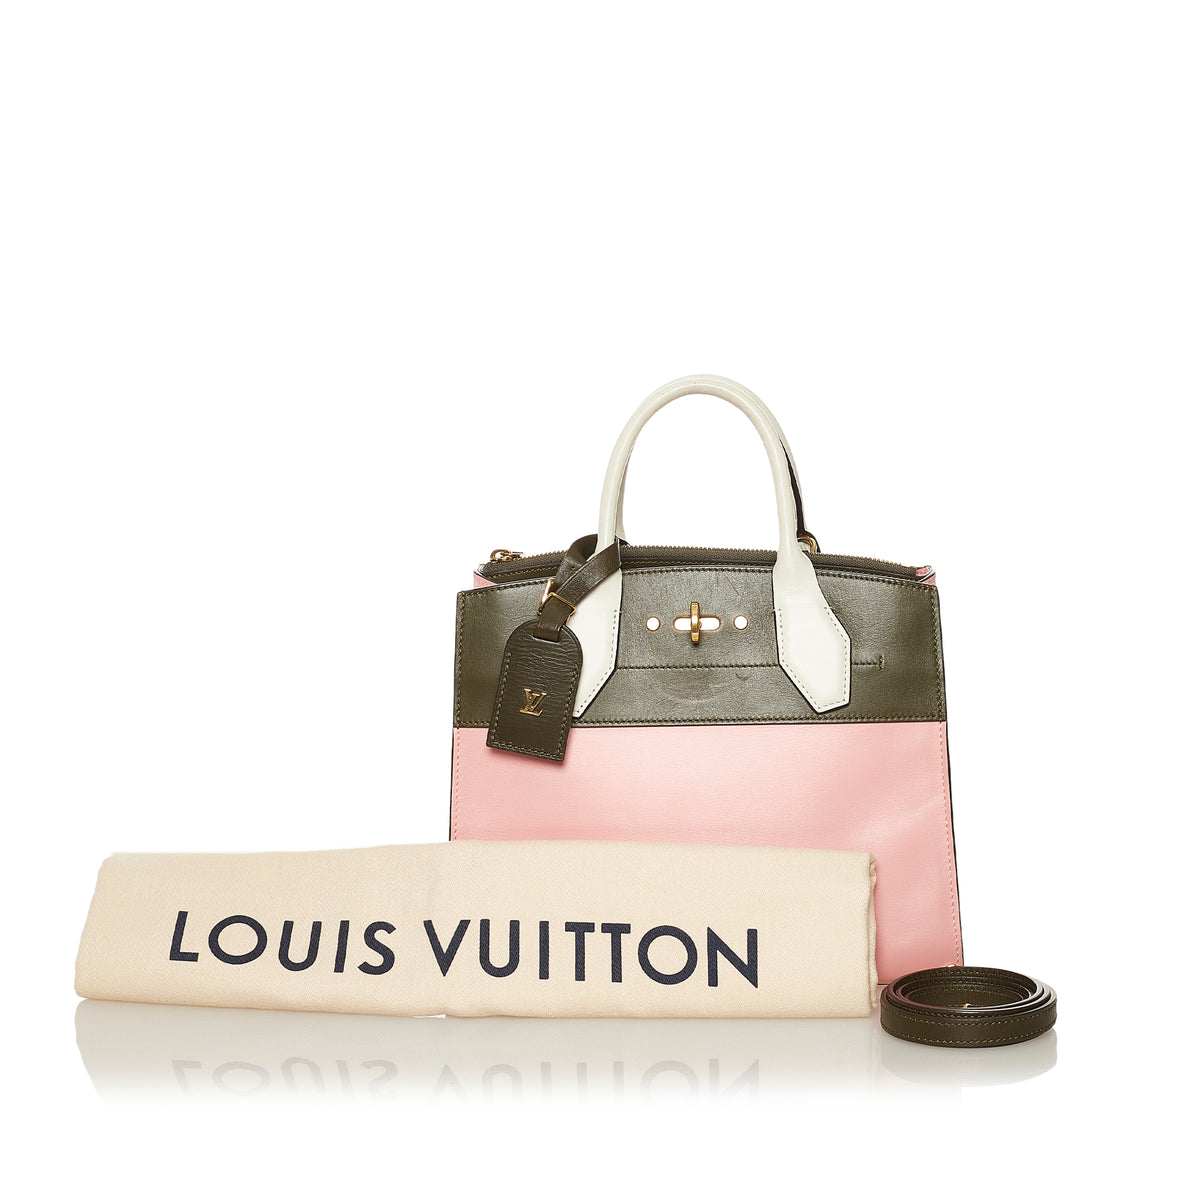 D&H Clothing - Louis Vuitton kabát-110€ Číslo-S do L Už aj